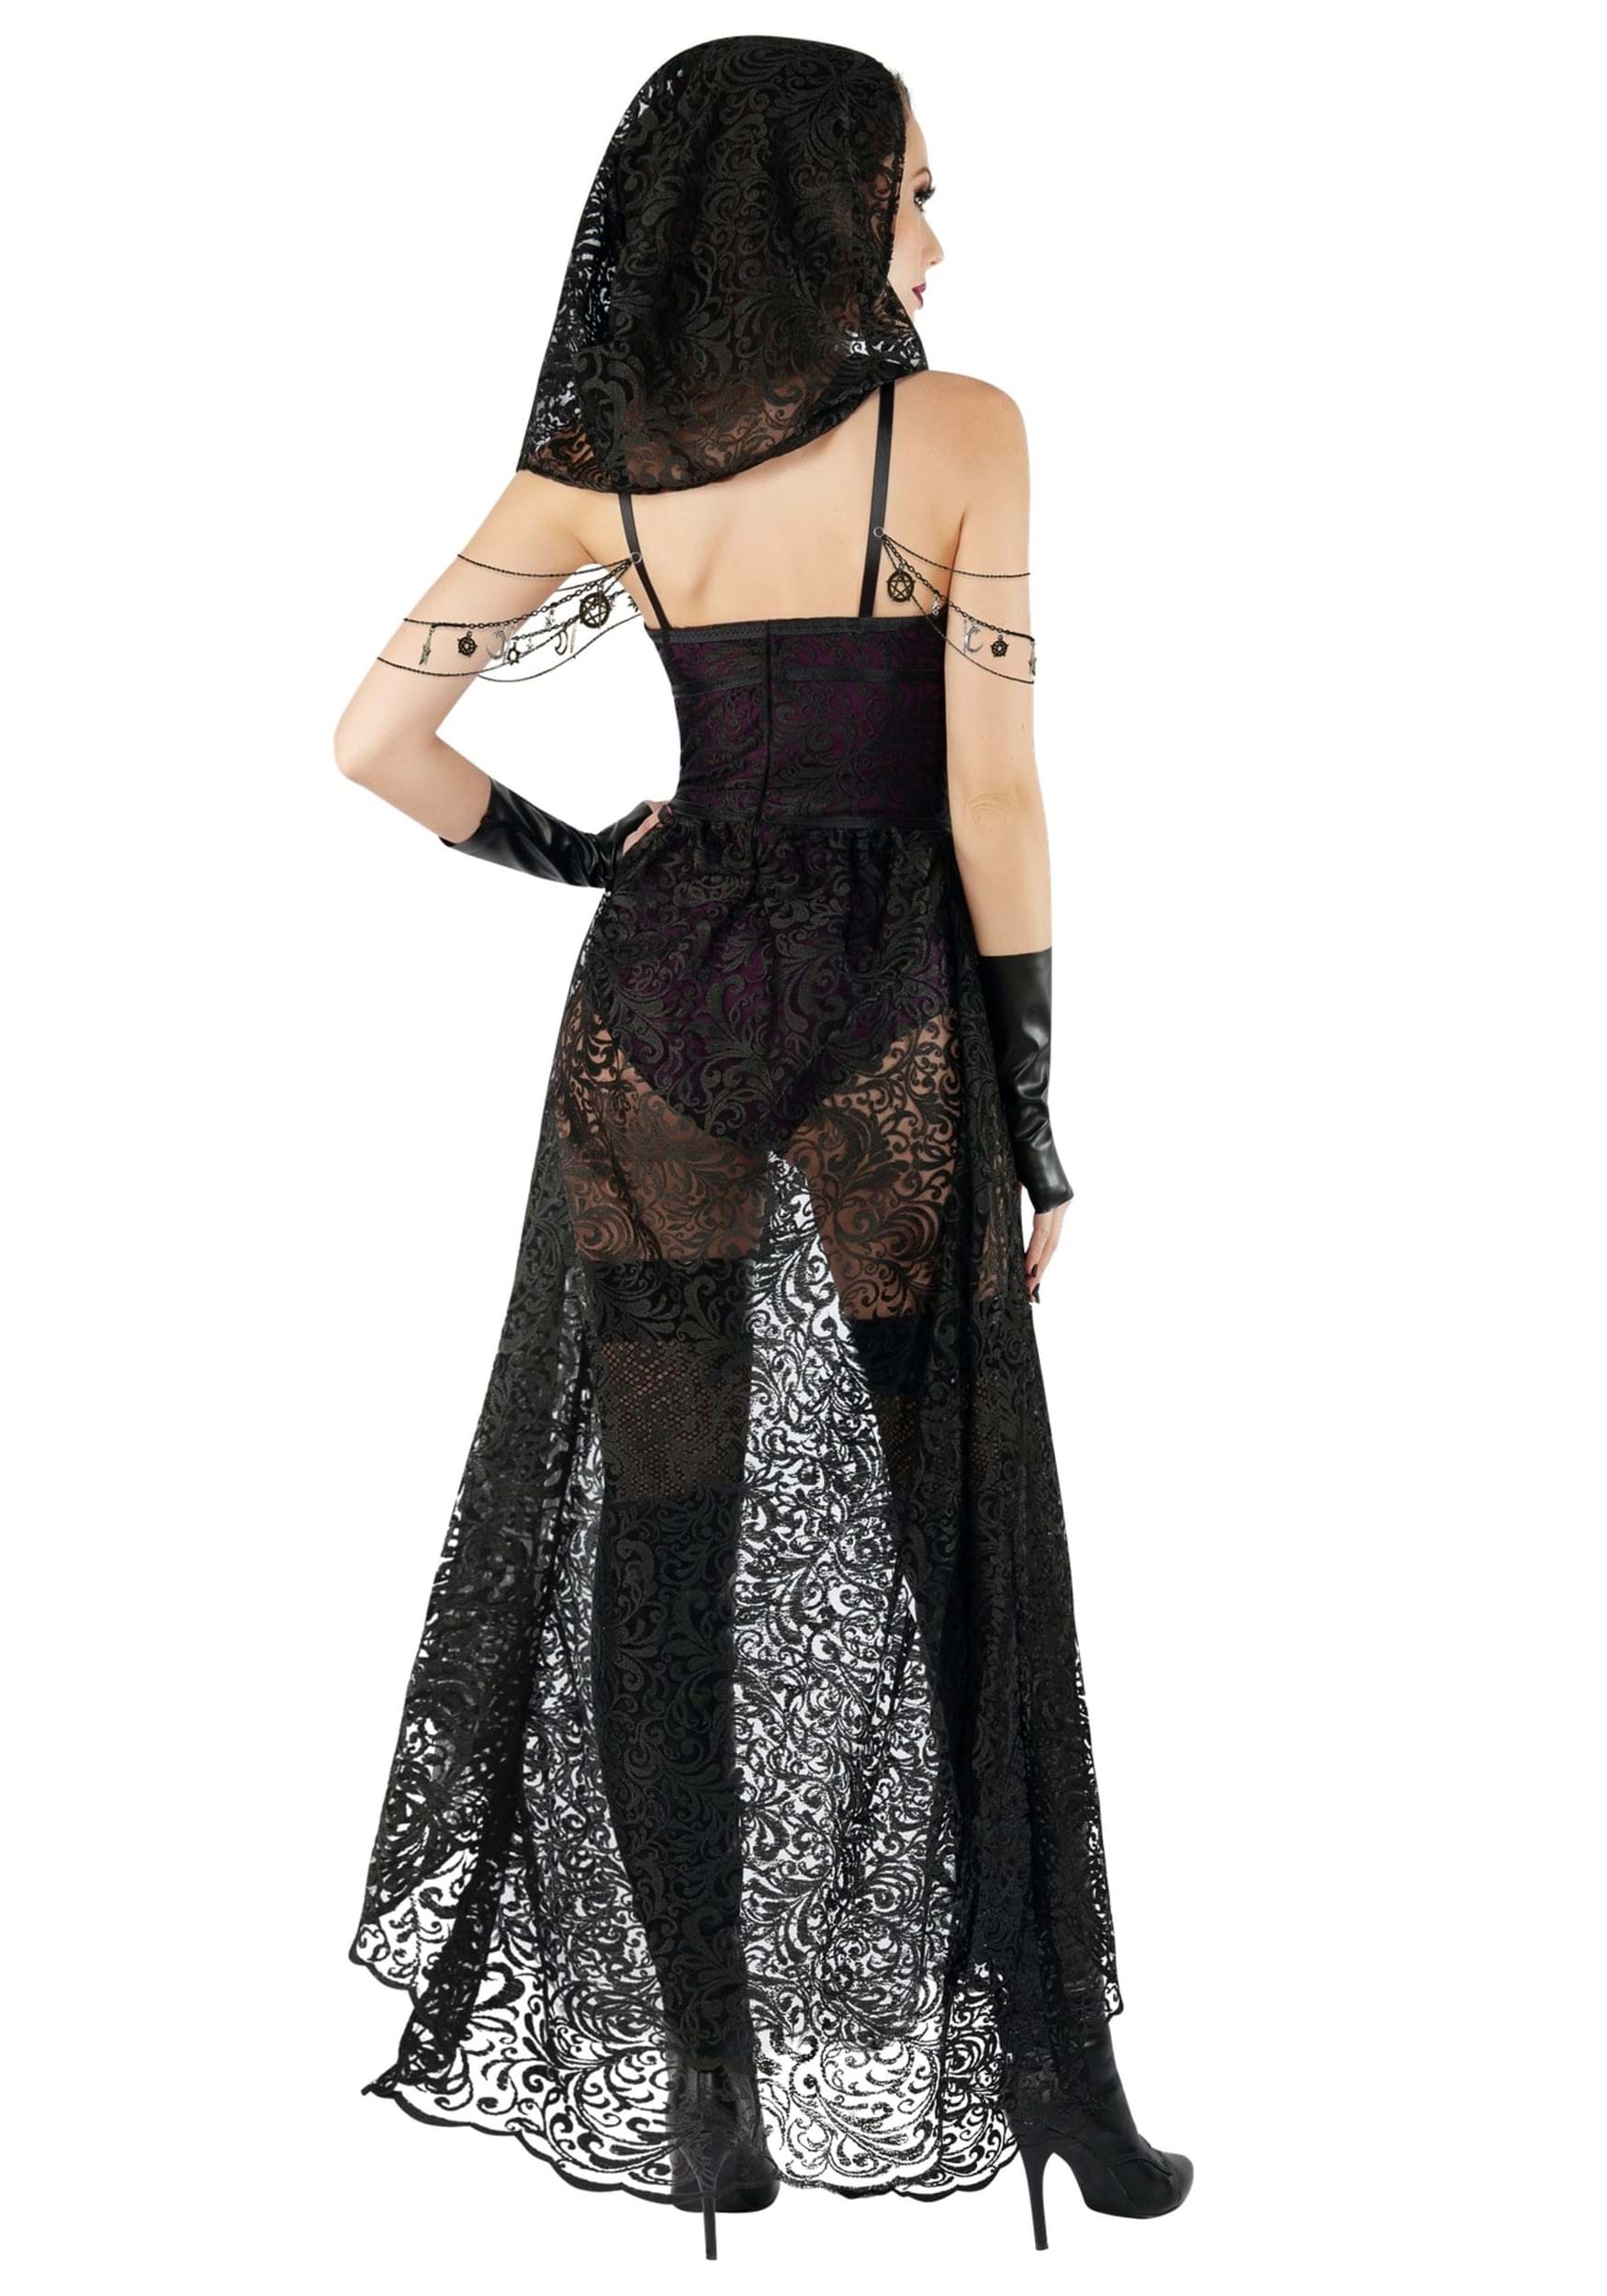 Sexy Dark Priestess Women's Costume